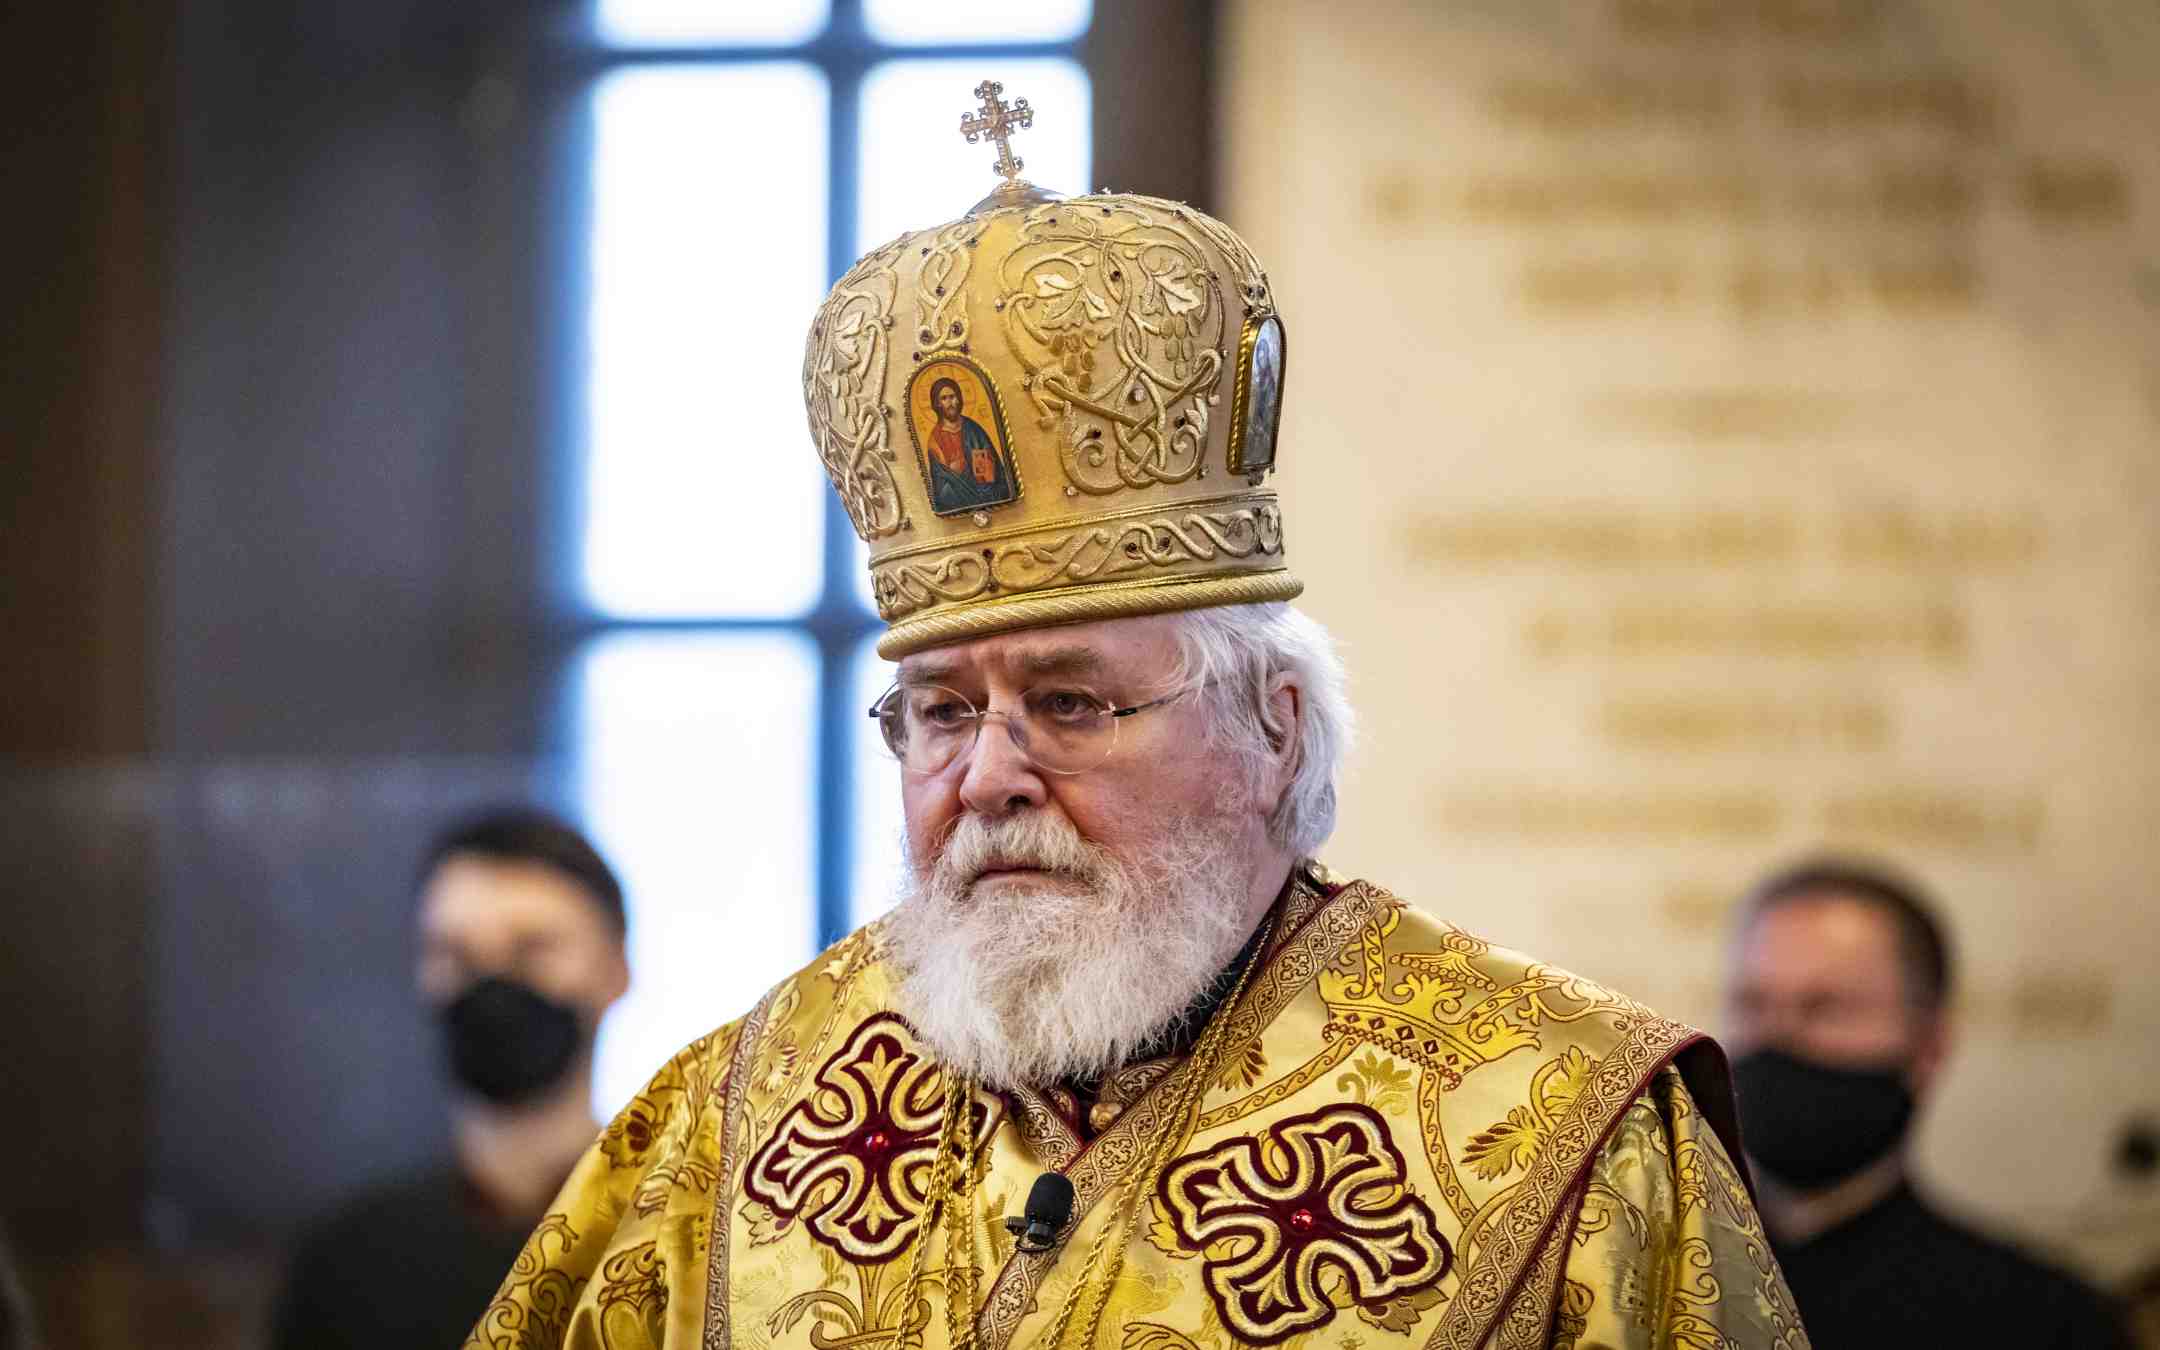 Arkkipiispa Leo Uspenskin katedraalissa piispan vihkimyksessä